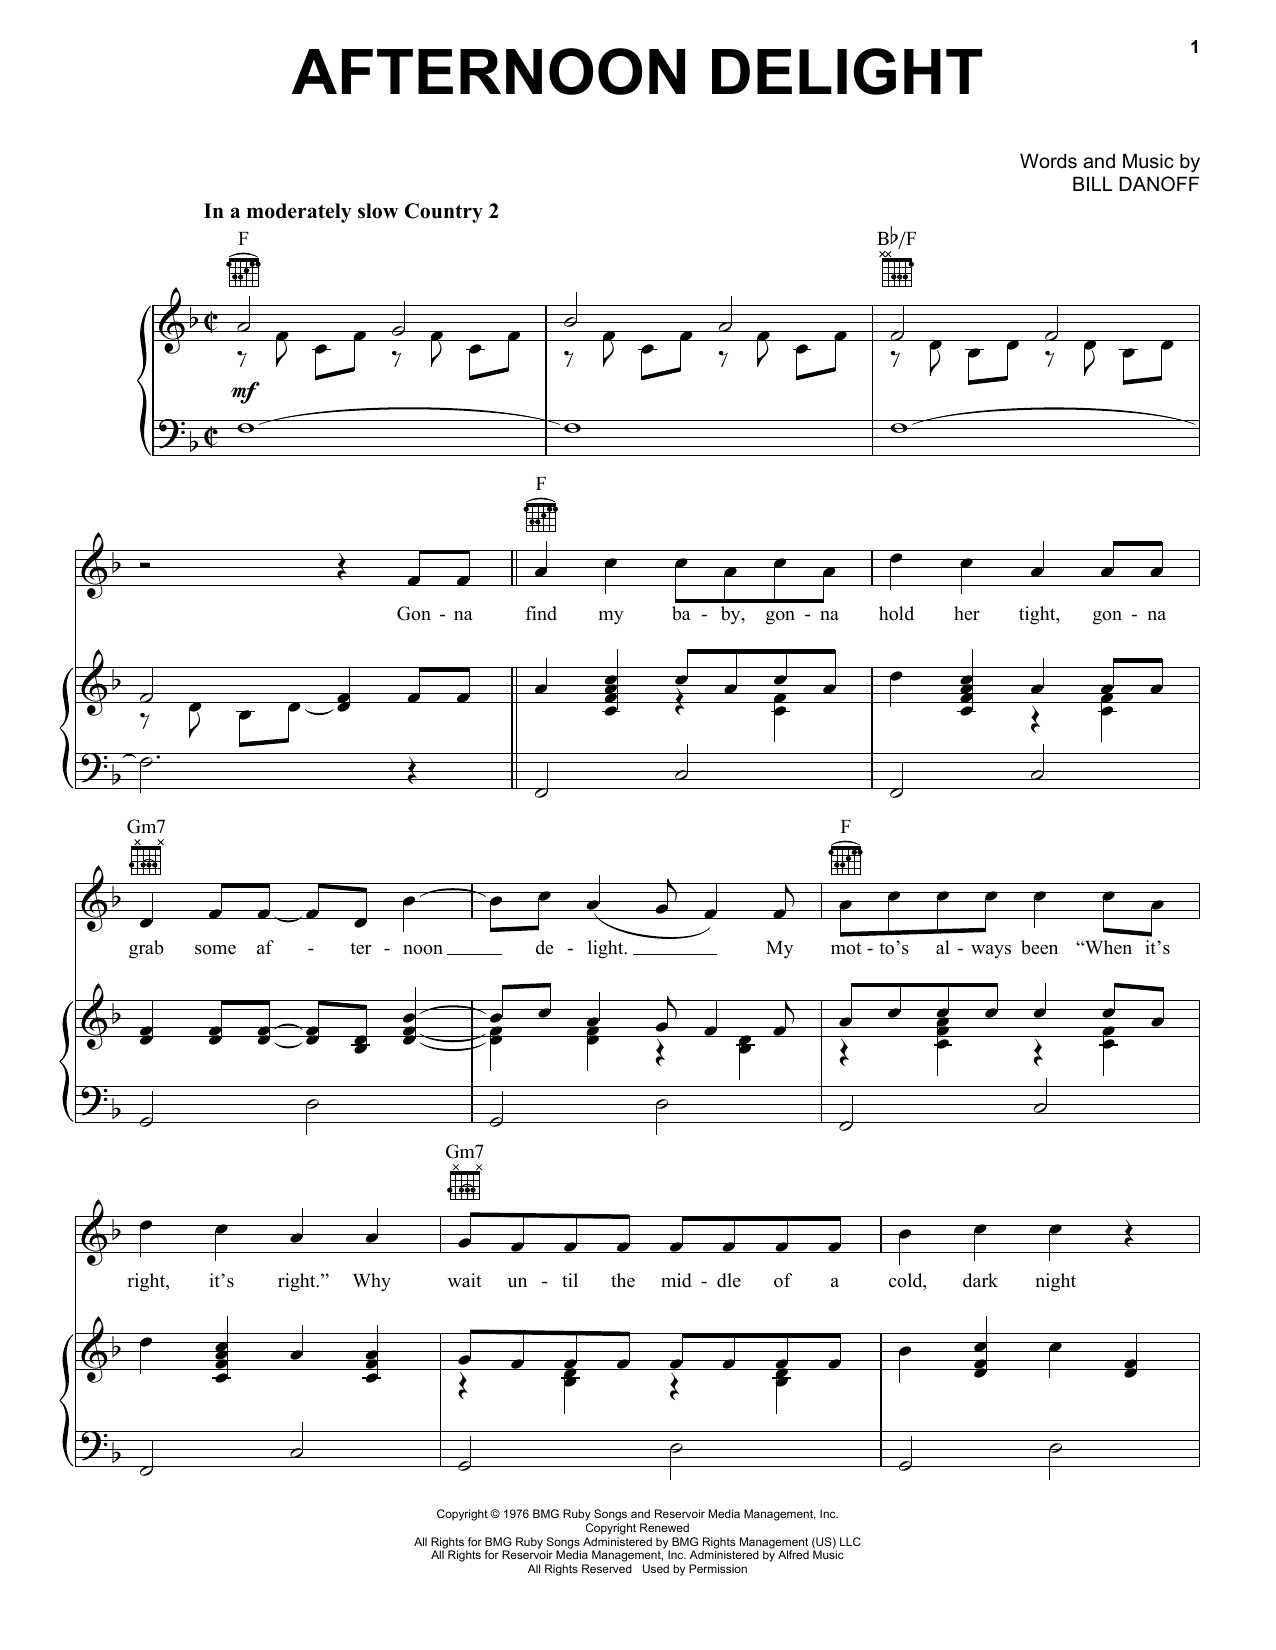 bremse Ændringer fra Utænkelig Starland Vocal Band "Afternoon Delight" Sheet Music PDF Notes, Chords |  Rock Score Ukulele Download Printable. SKU: 162140